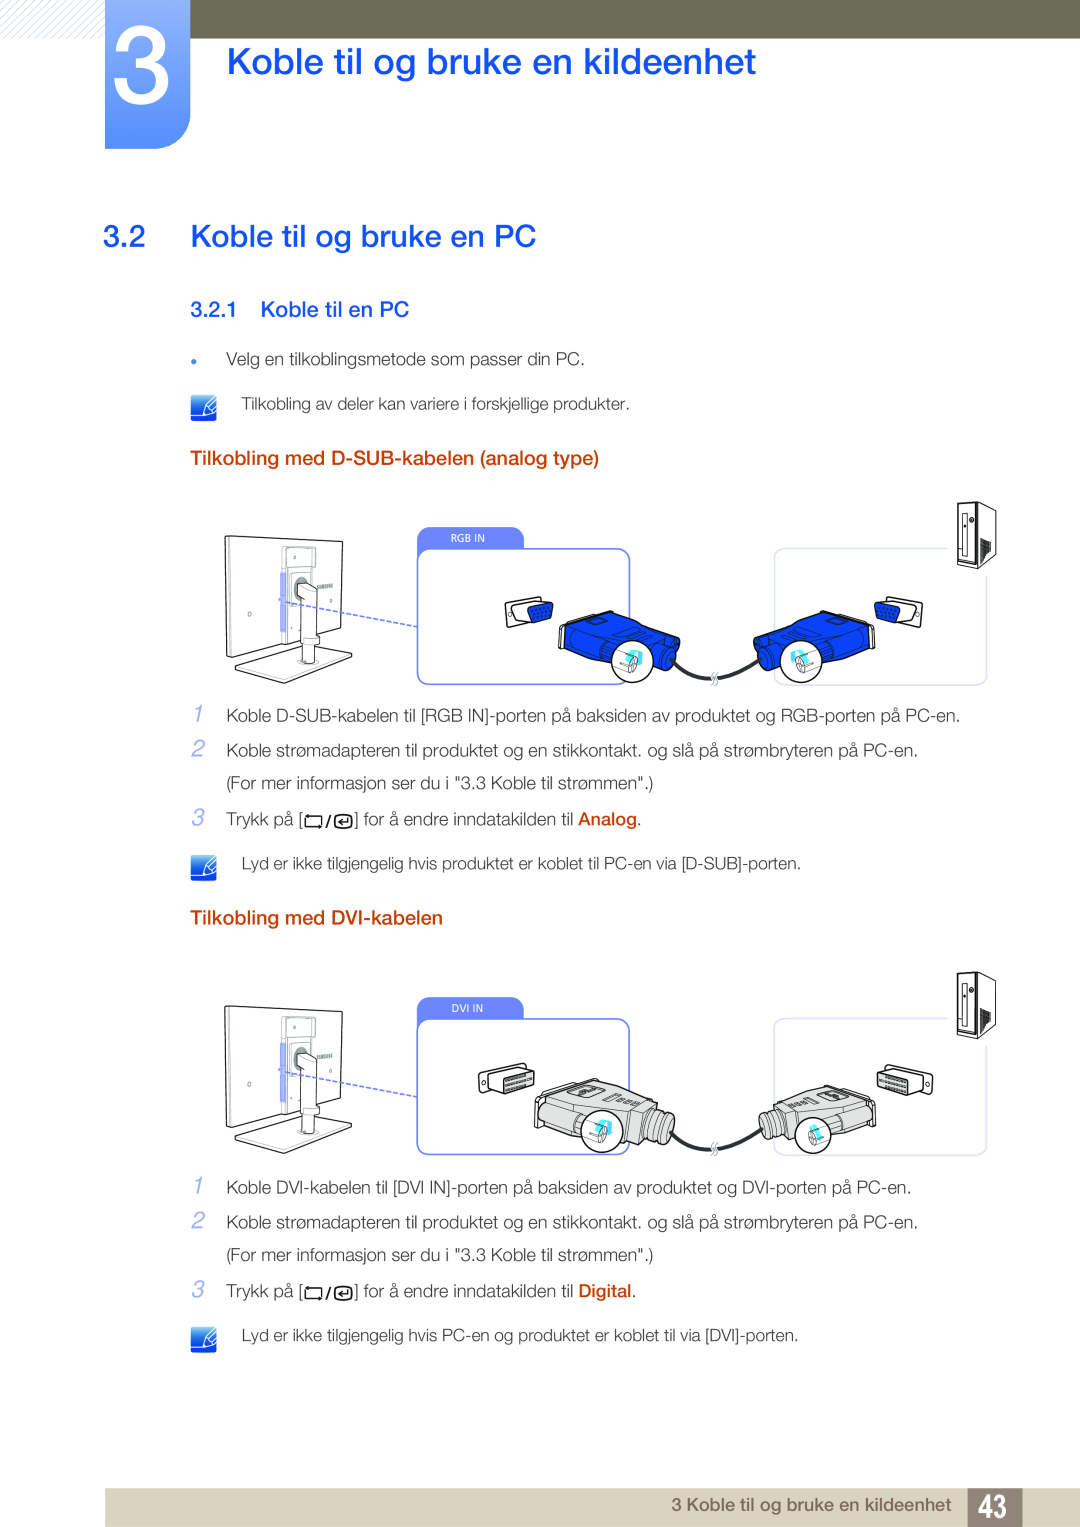 Samsung LF19TSWTBDN/EN, LF24TSWTBDN/EN Koble til og bruke en PC, Koble til en PC, Tilkobling med D-SUB-kabelen analog type 